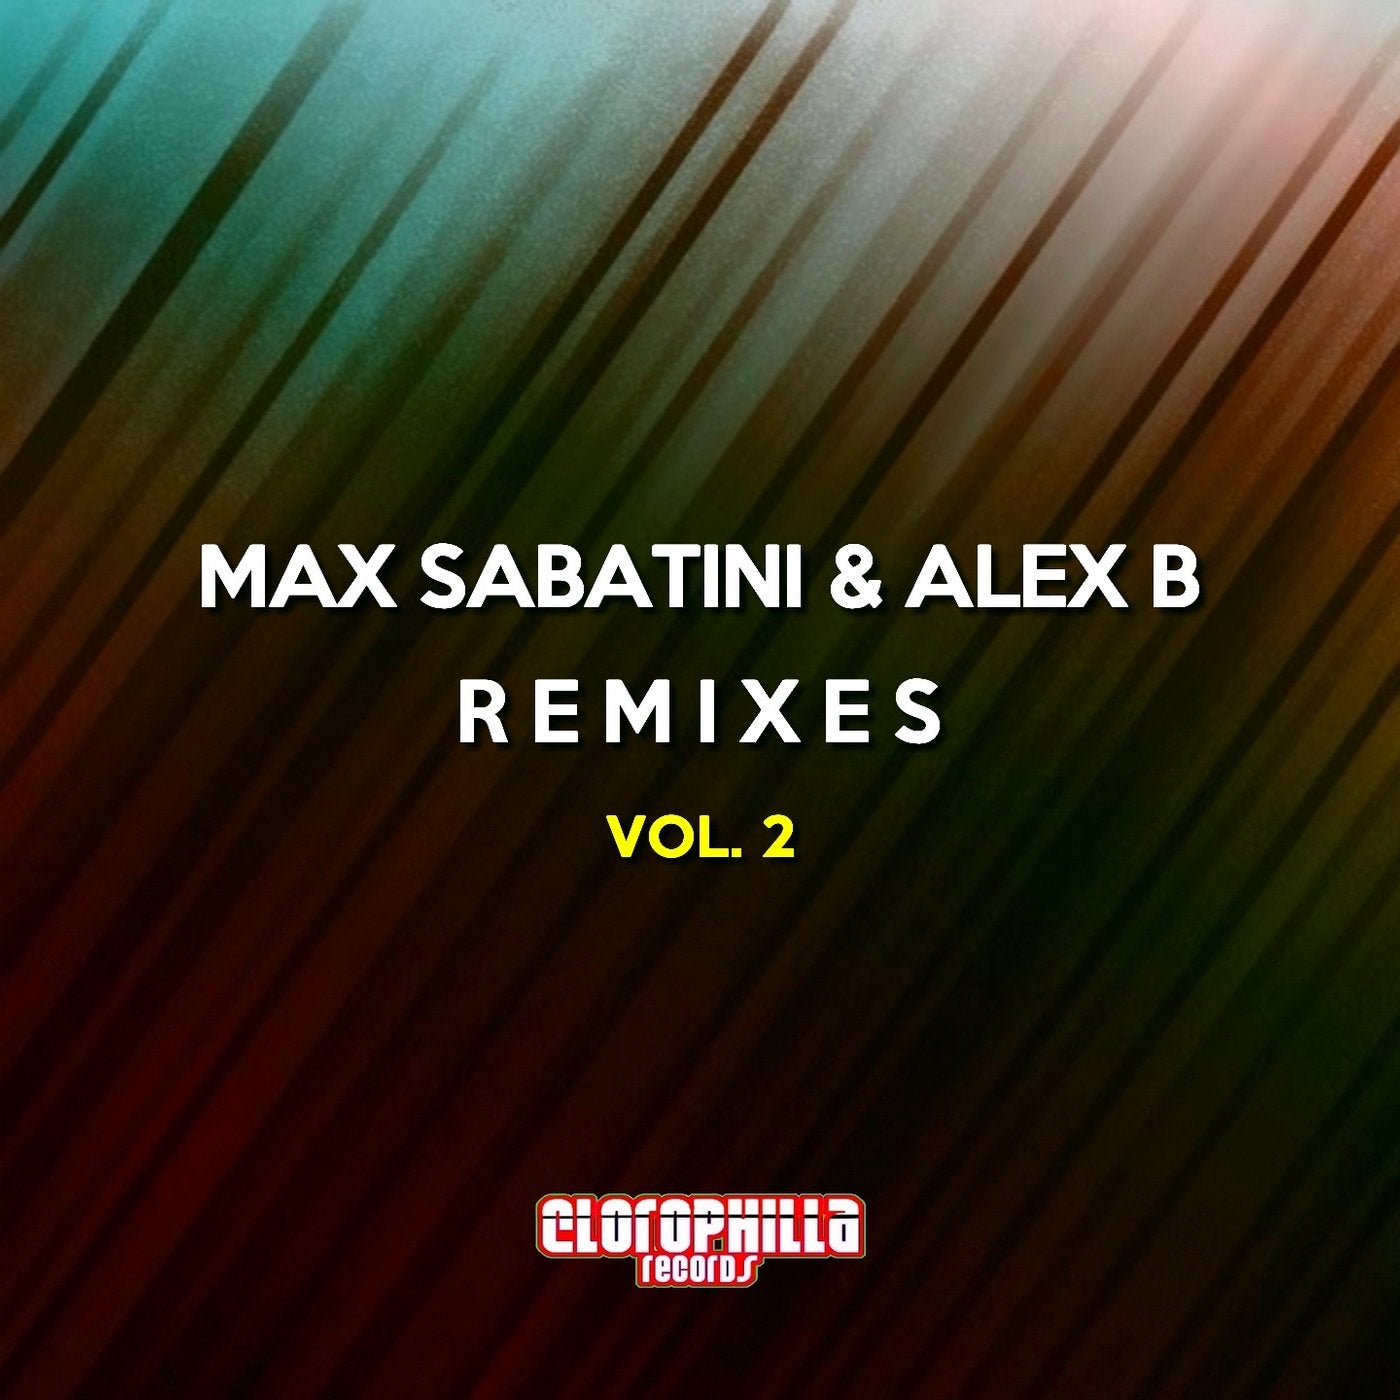 Max Sabatini & Alex B Remixes, Vol. 2